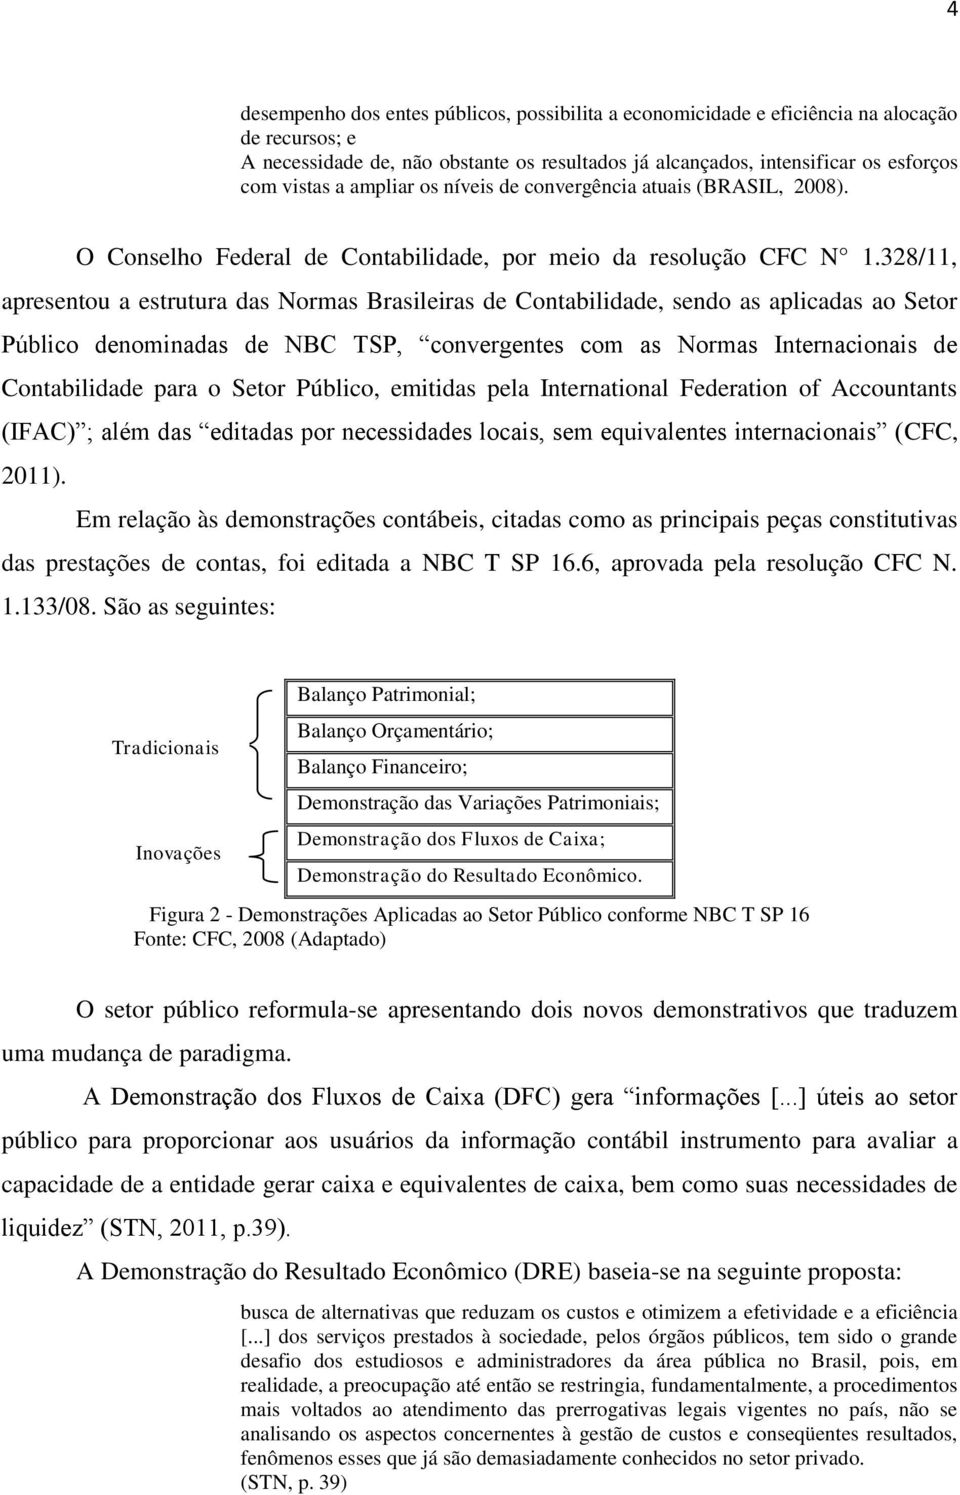 328/11, apresentou a estrutura das Normas Brasileiras de Contabilidade, sendo as aplicadas ao Setor Público denominadas de NBC TSP, convergentes com as Normas Internacionais de Contabilidade para o